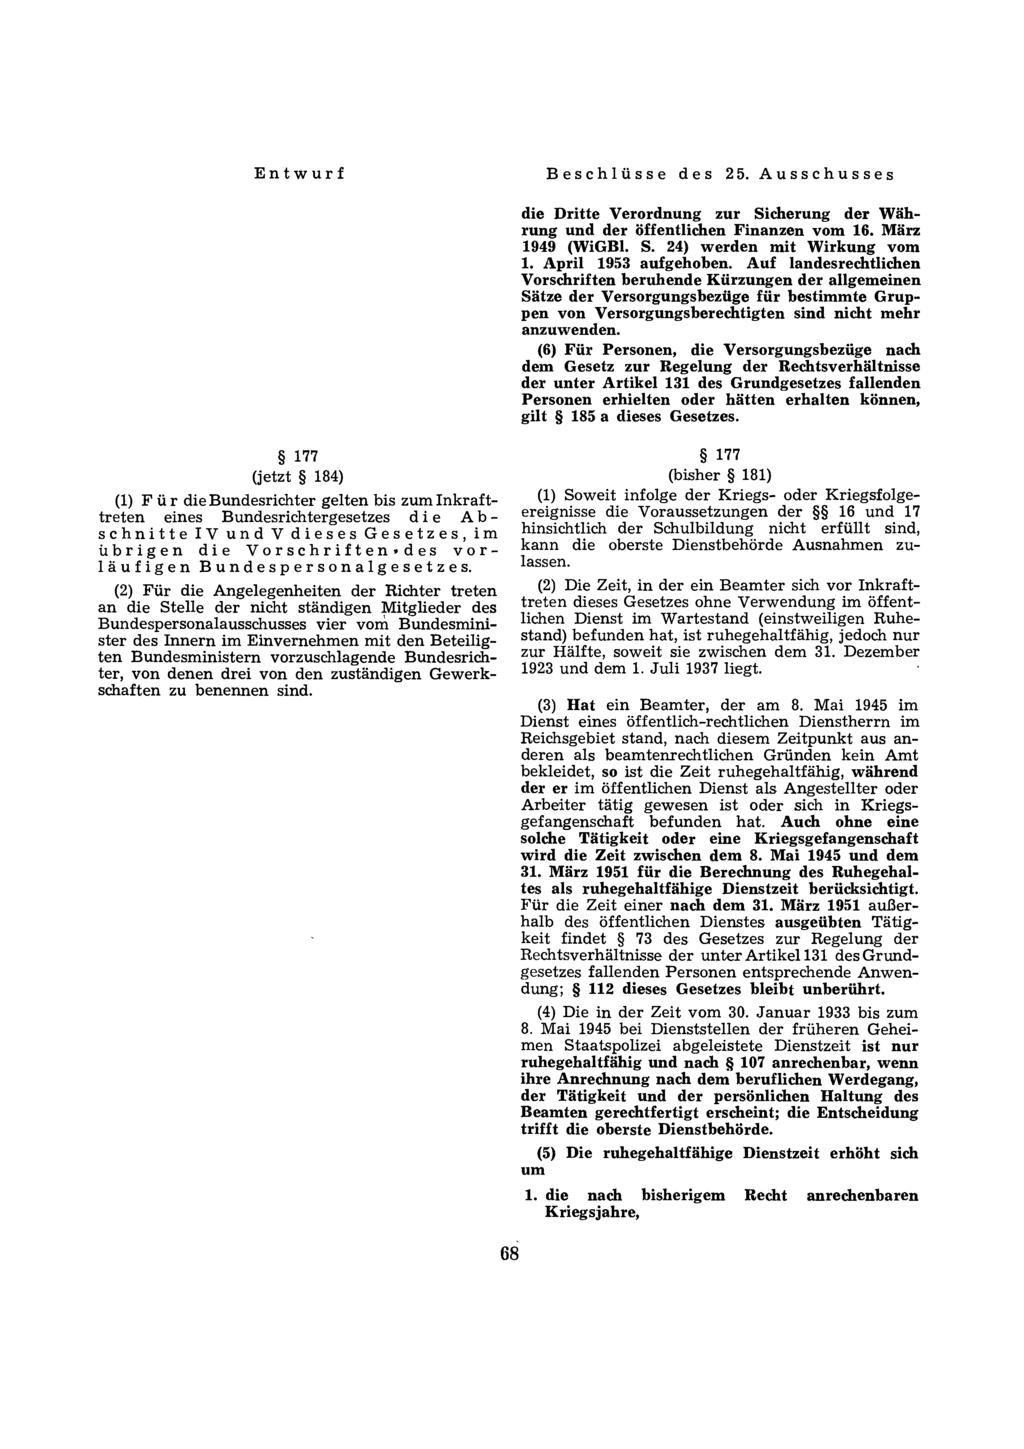 die Dritte Verordnung zur Sicherung der Währung und der öffentlichen Finanzen vom 16. März 1949 (WiGBl. S. 24) werden mit Wirkung vom 1. April 1953 aufgehoben.